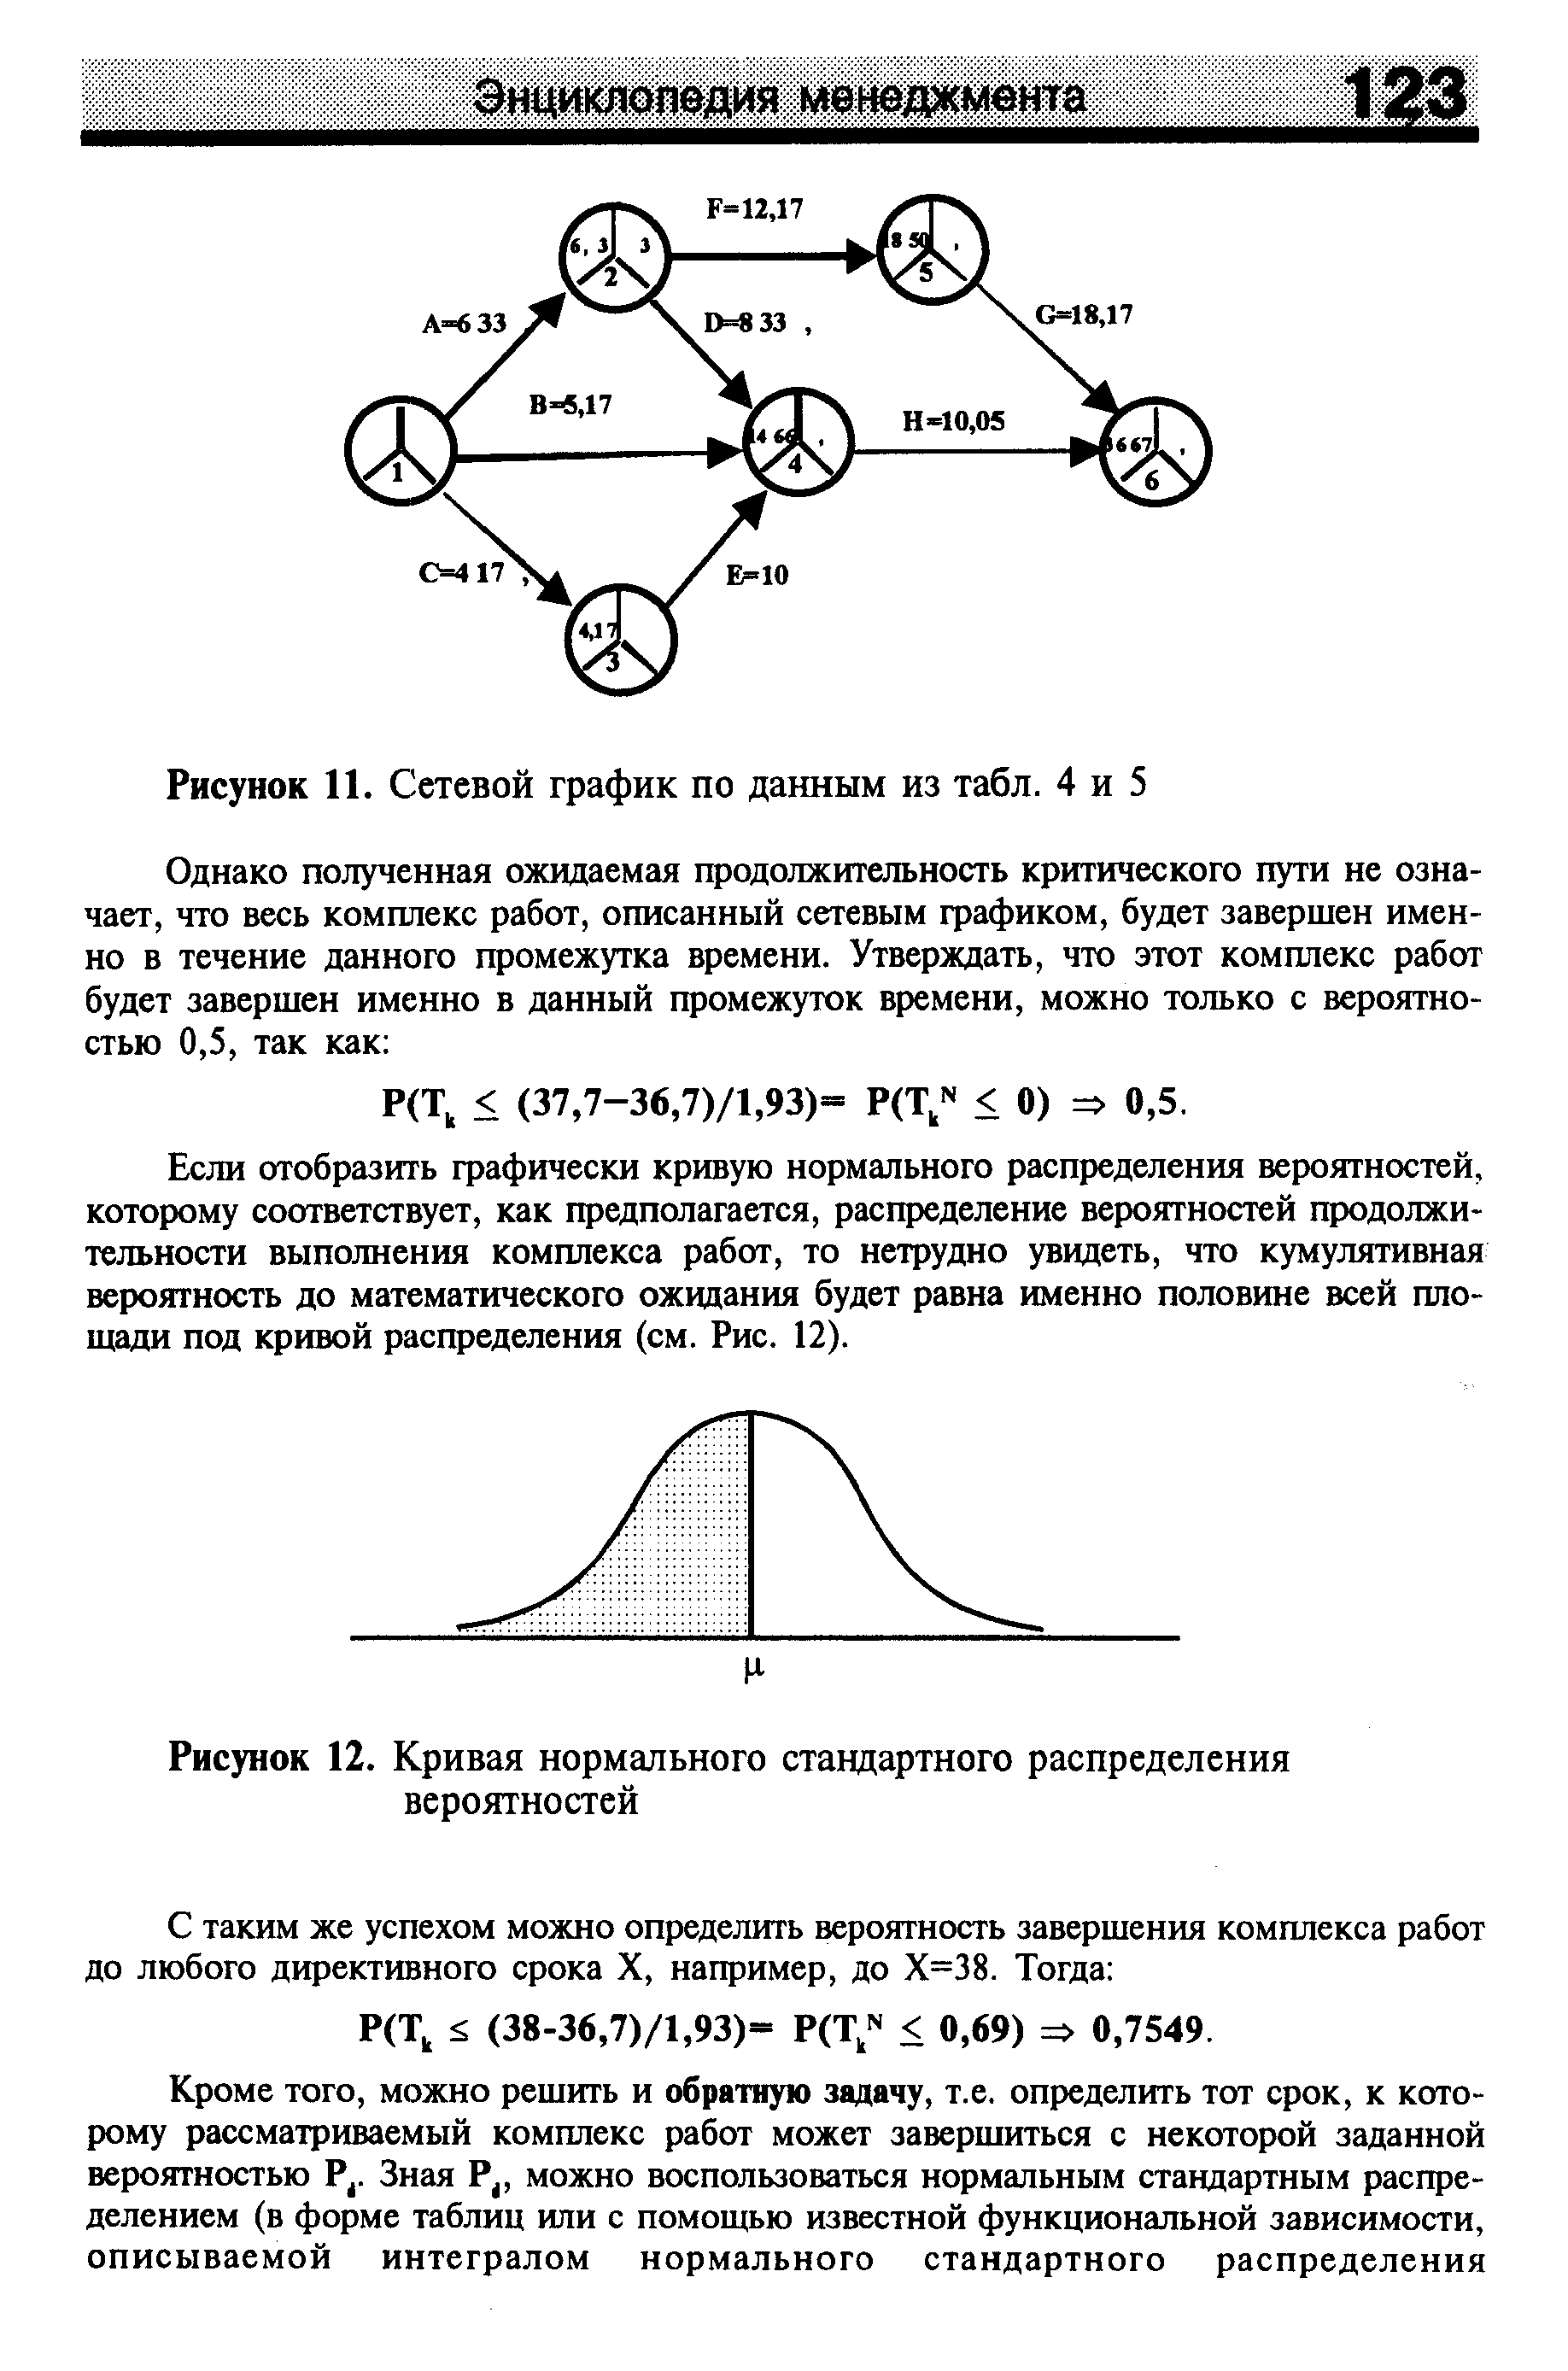 Рисунок 12. Кривая <a href="/info/87271">нормального стандартного распределения</a> вероятностей
